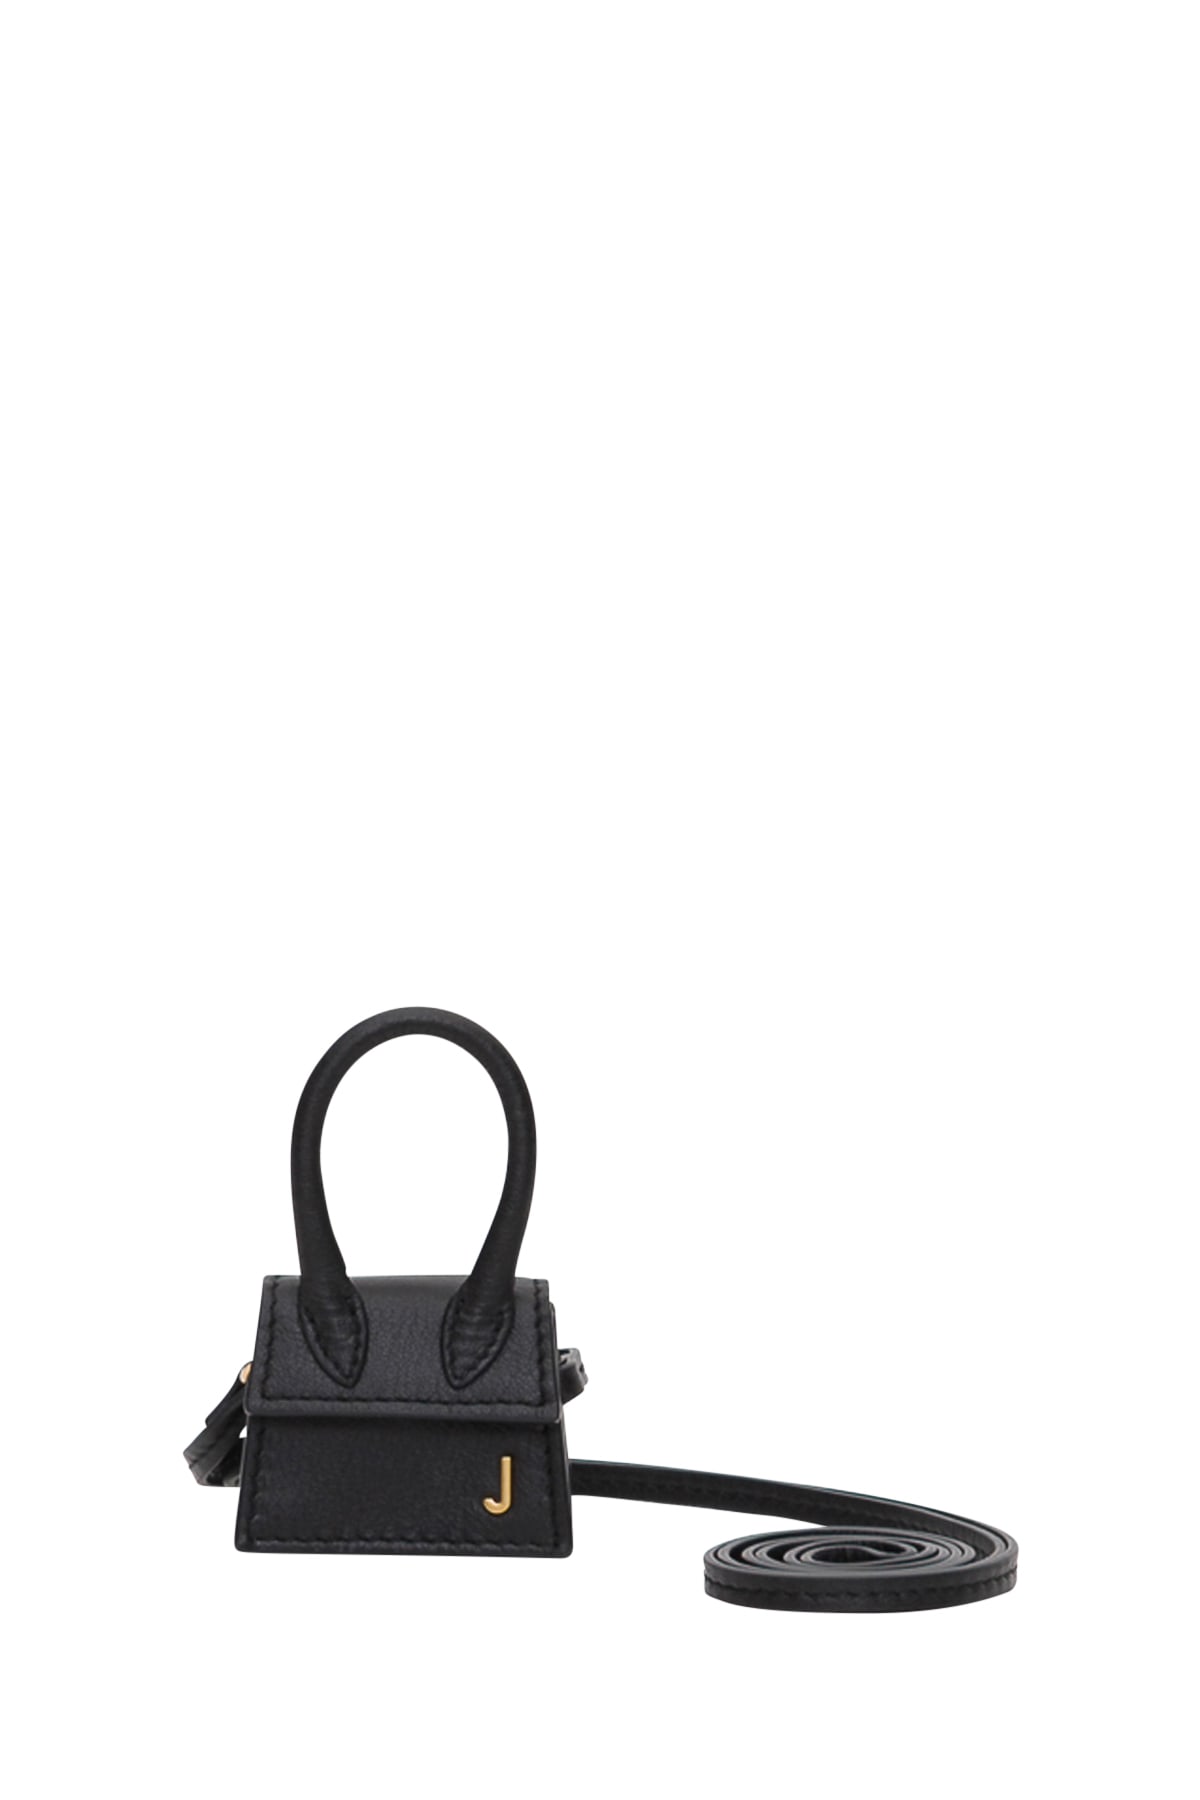 Jacquemus Le Petit Chiquito Micro Bag In Black | ModeSens